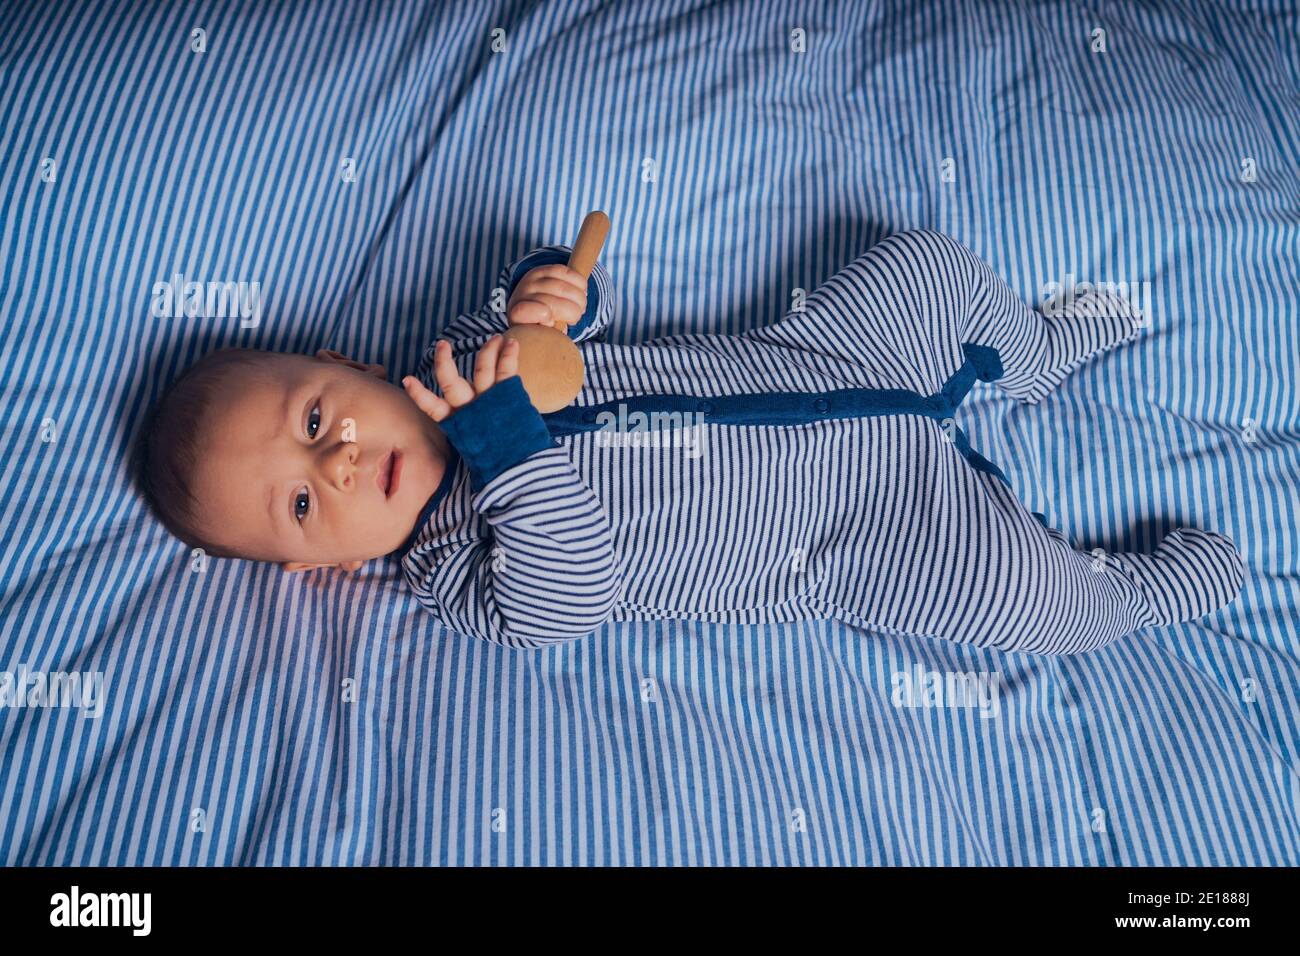 Un petit bébé est allongé sur un lit avec un cliquetis en bois Banque D'Images